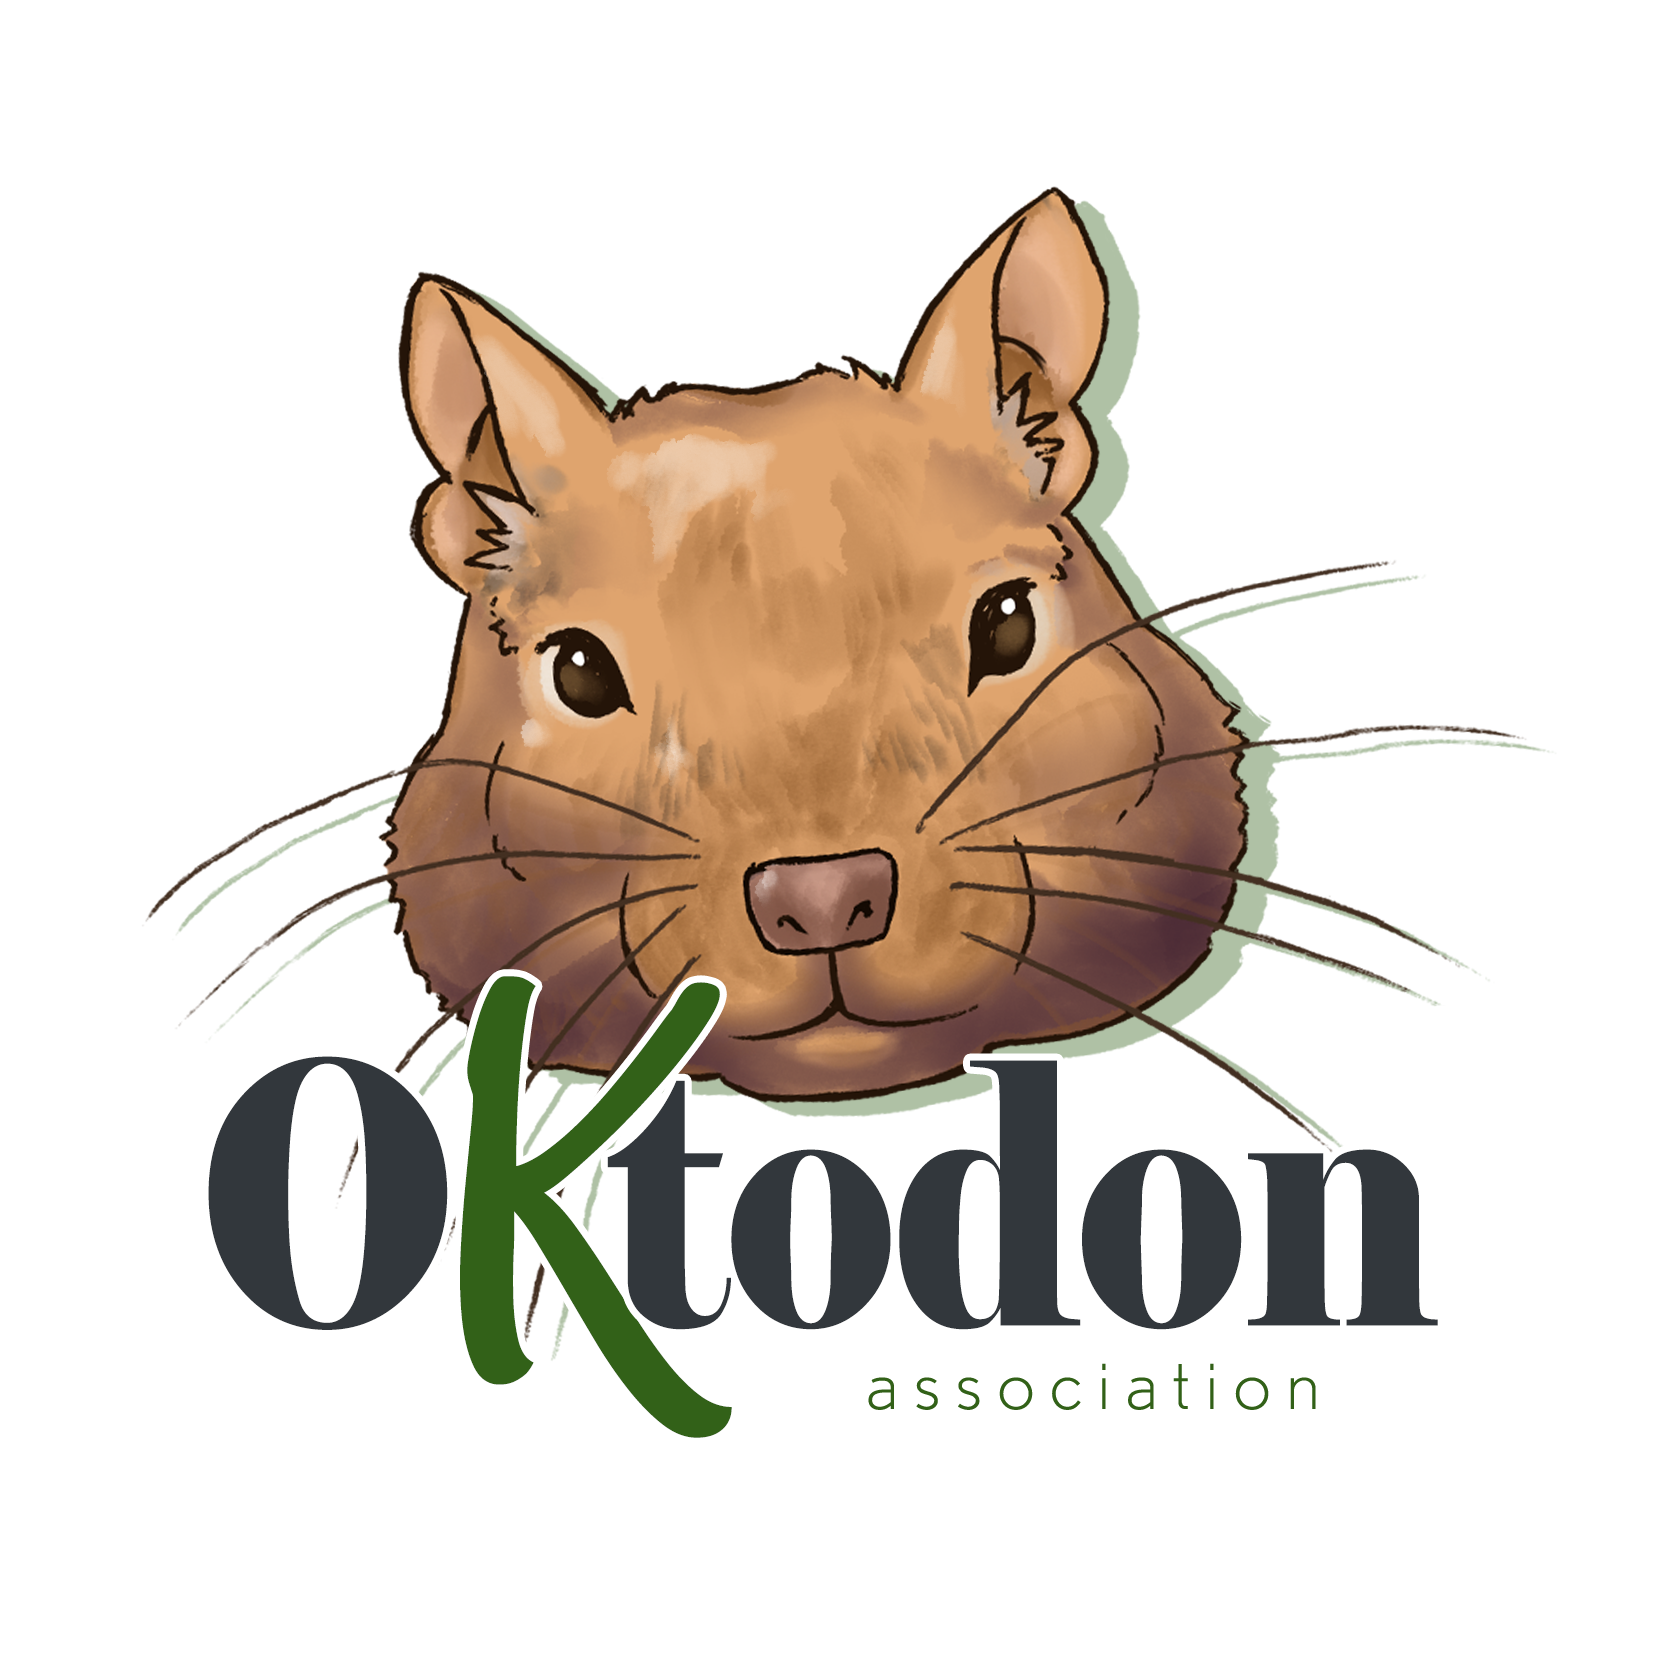 Oktodon